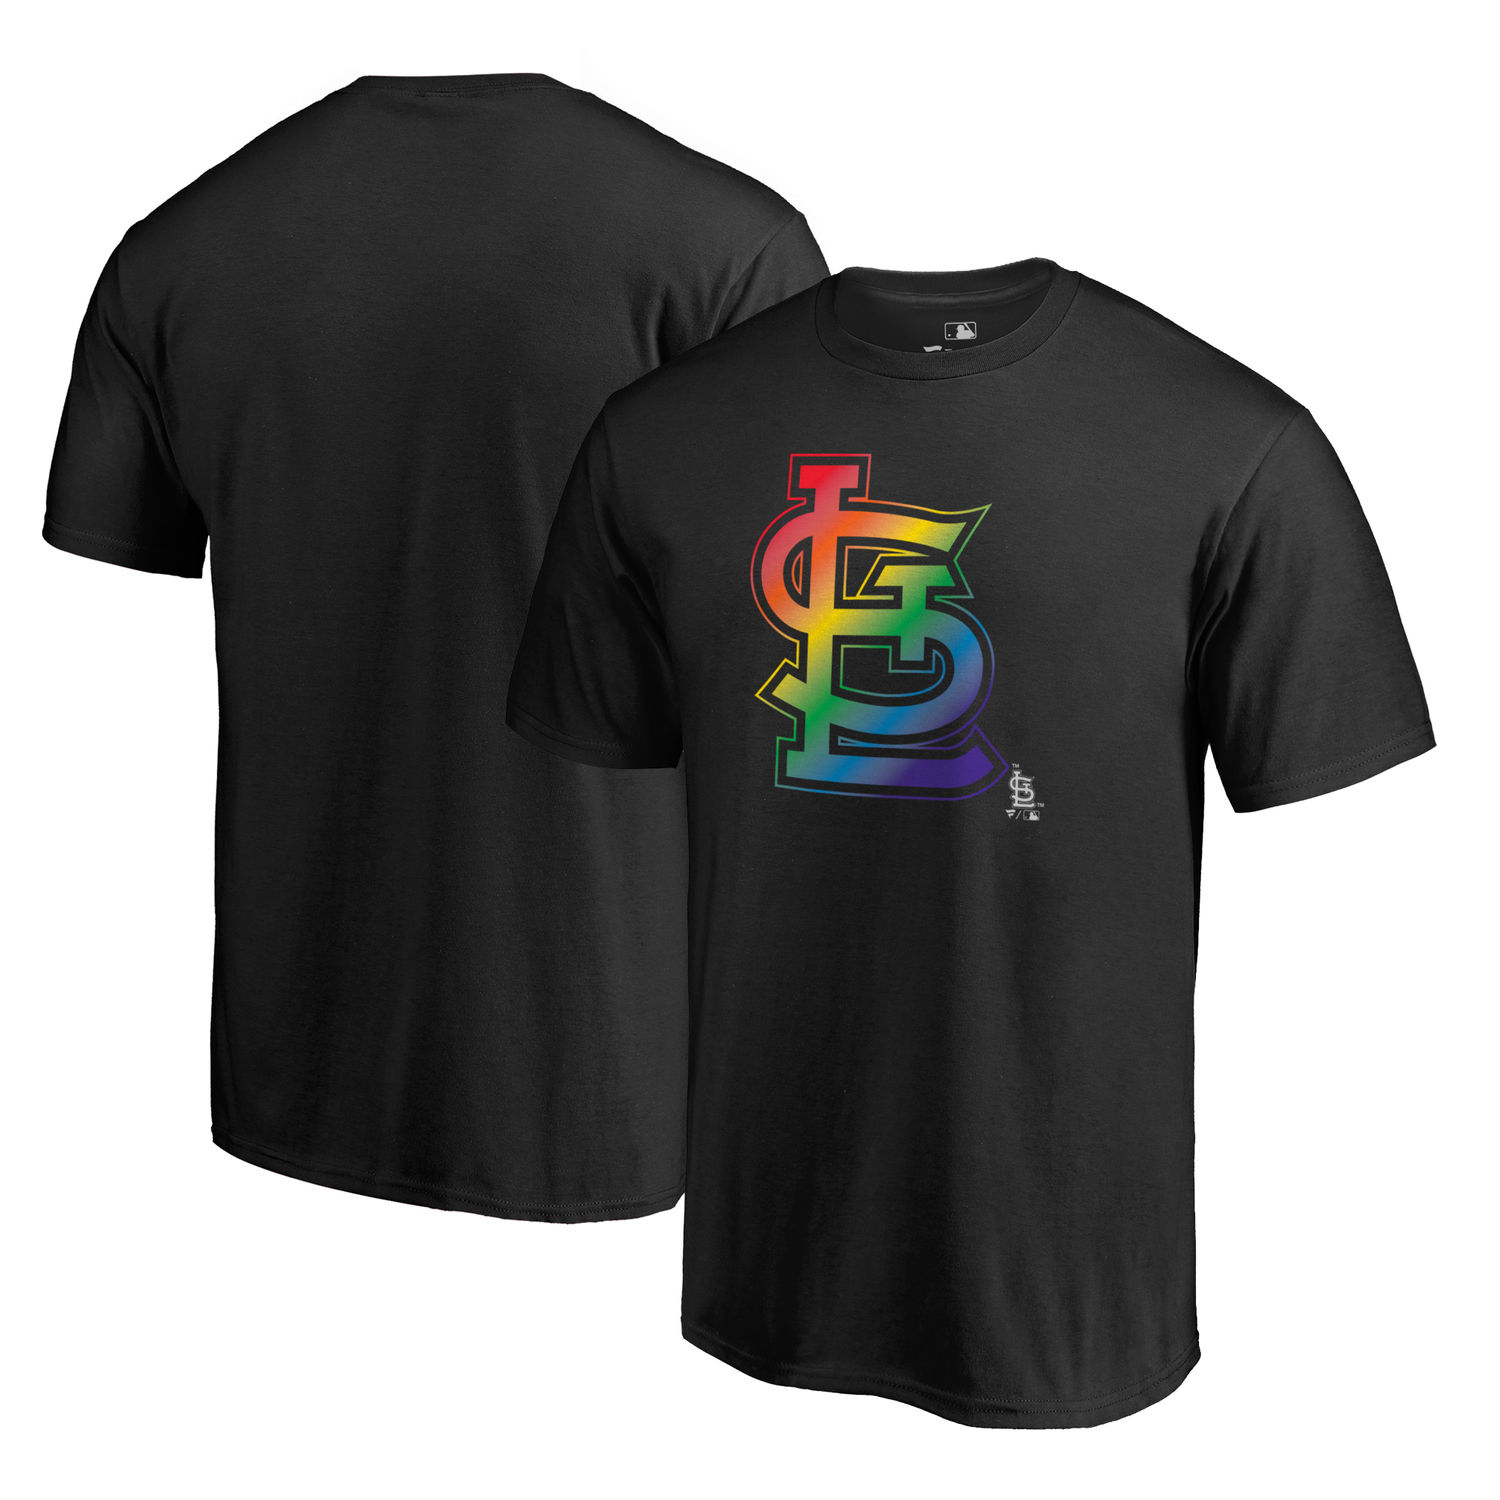 Men's St. Louis Cardinals Fanatics Branded Pride Black T Shirt